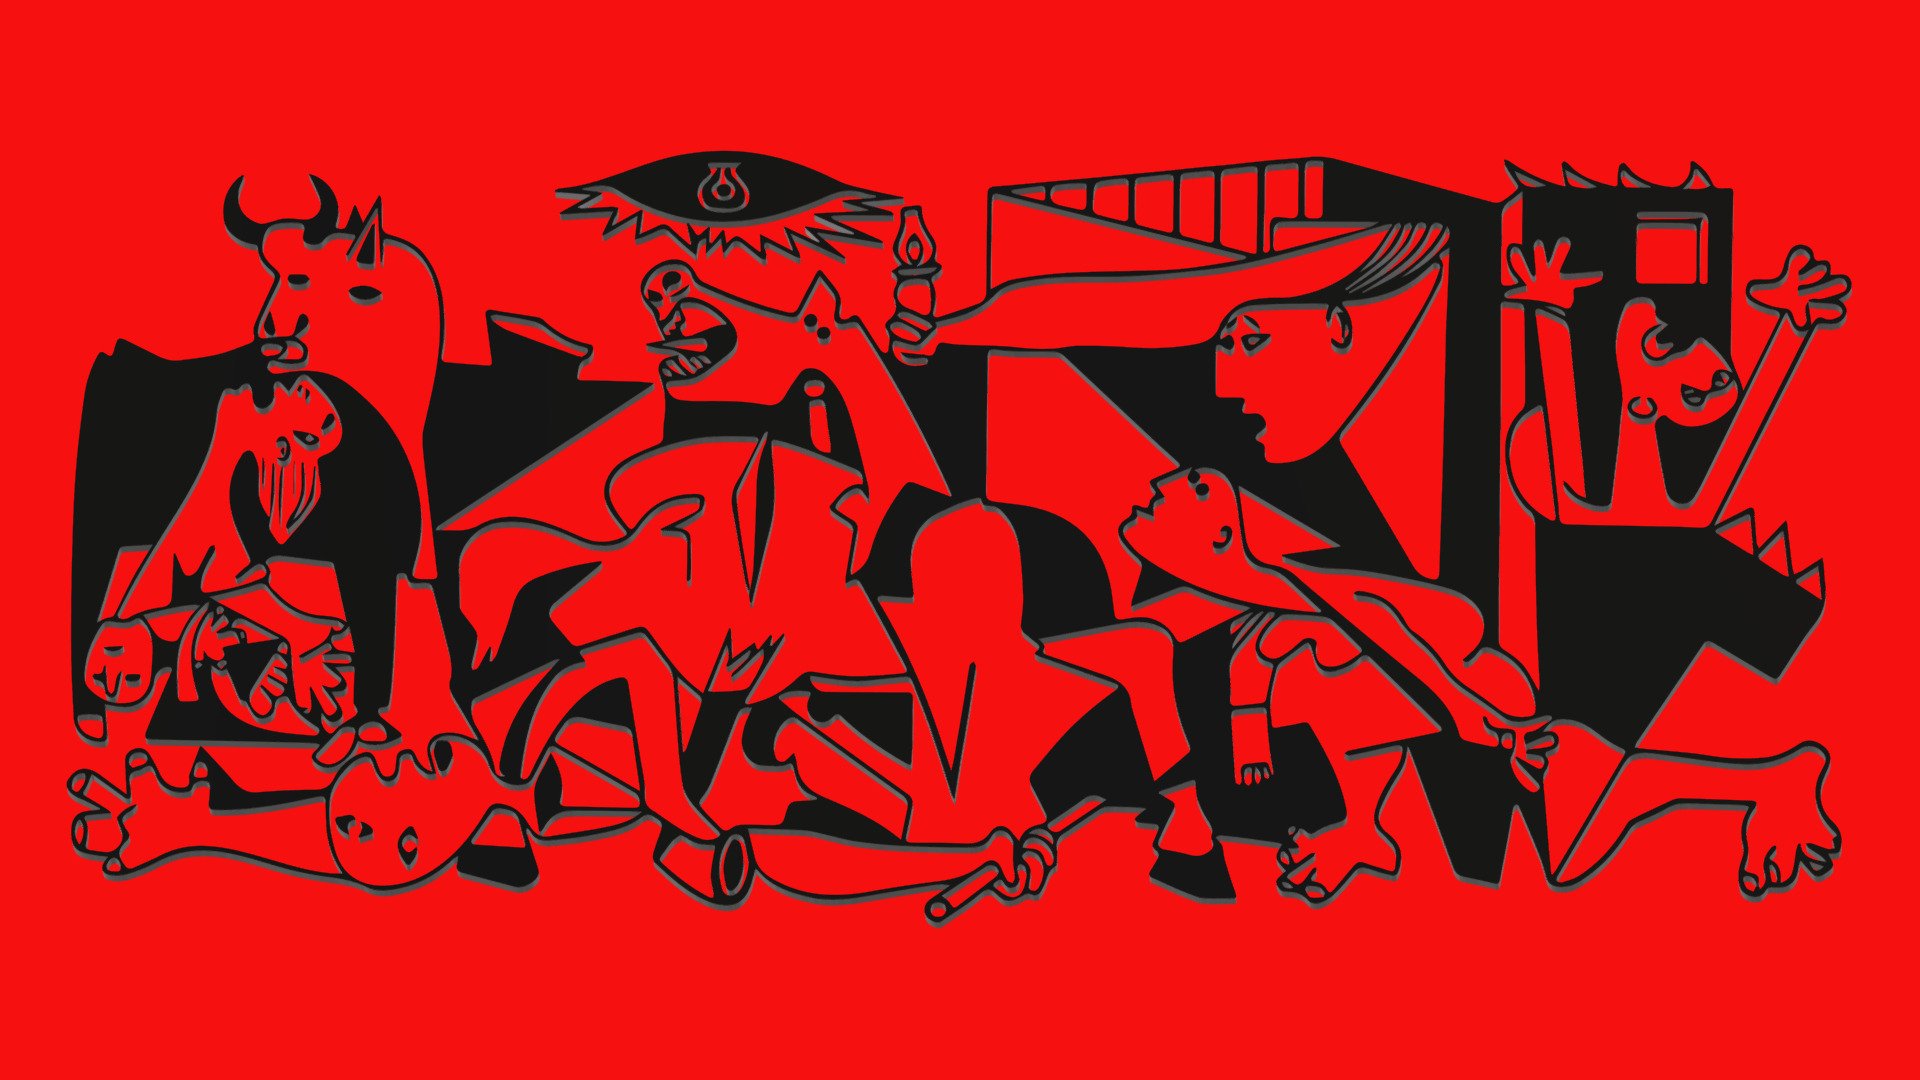 Siloueta en 3D del Guernica de Pablo Picasso pintado para mostrar los horrores del bombardeo sobre población civill cometido por la legión Condor nazi sobre la localidad de Guernica en la Guerra Civil Española - GUERNICA silueta en 3d by Pablo Picasso - Download Free 3D model by vmmaniac 3d model